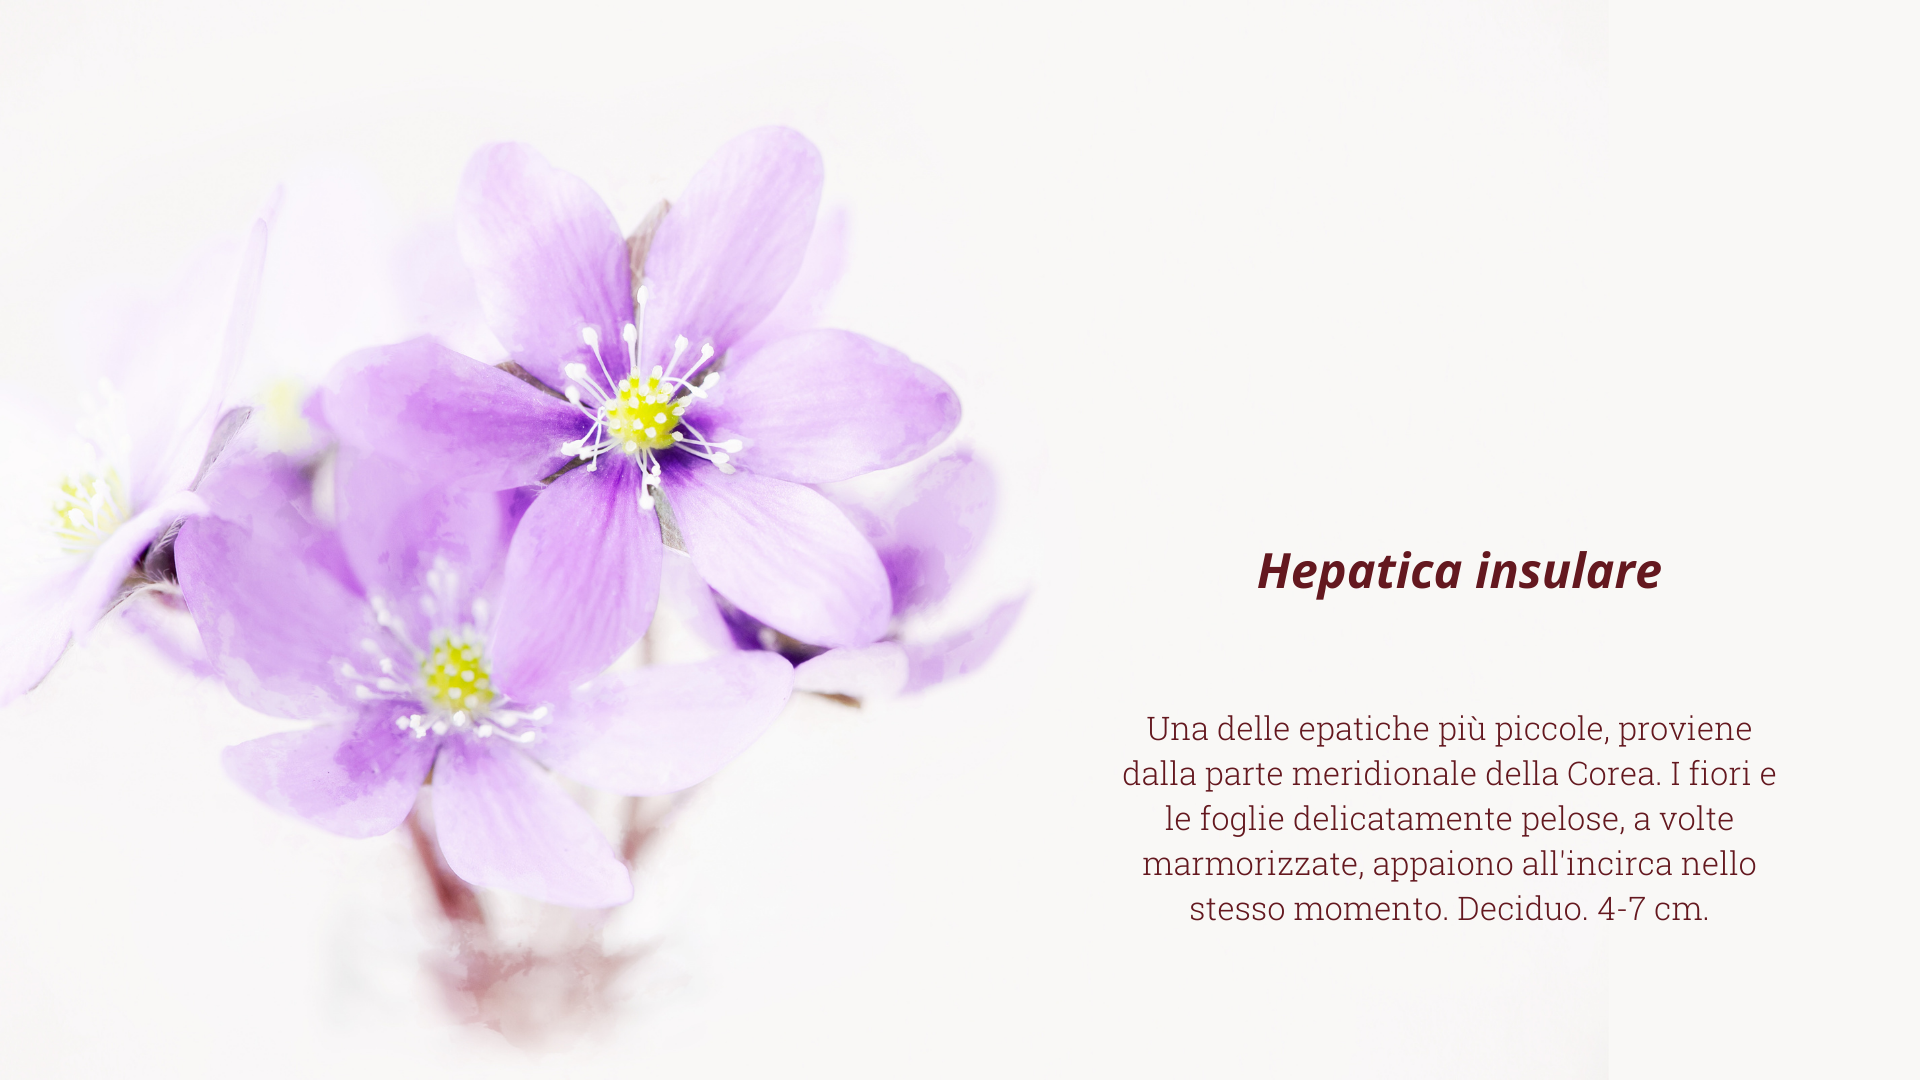 hepatica